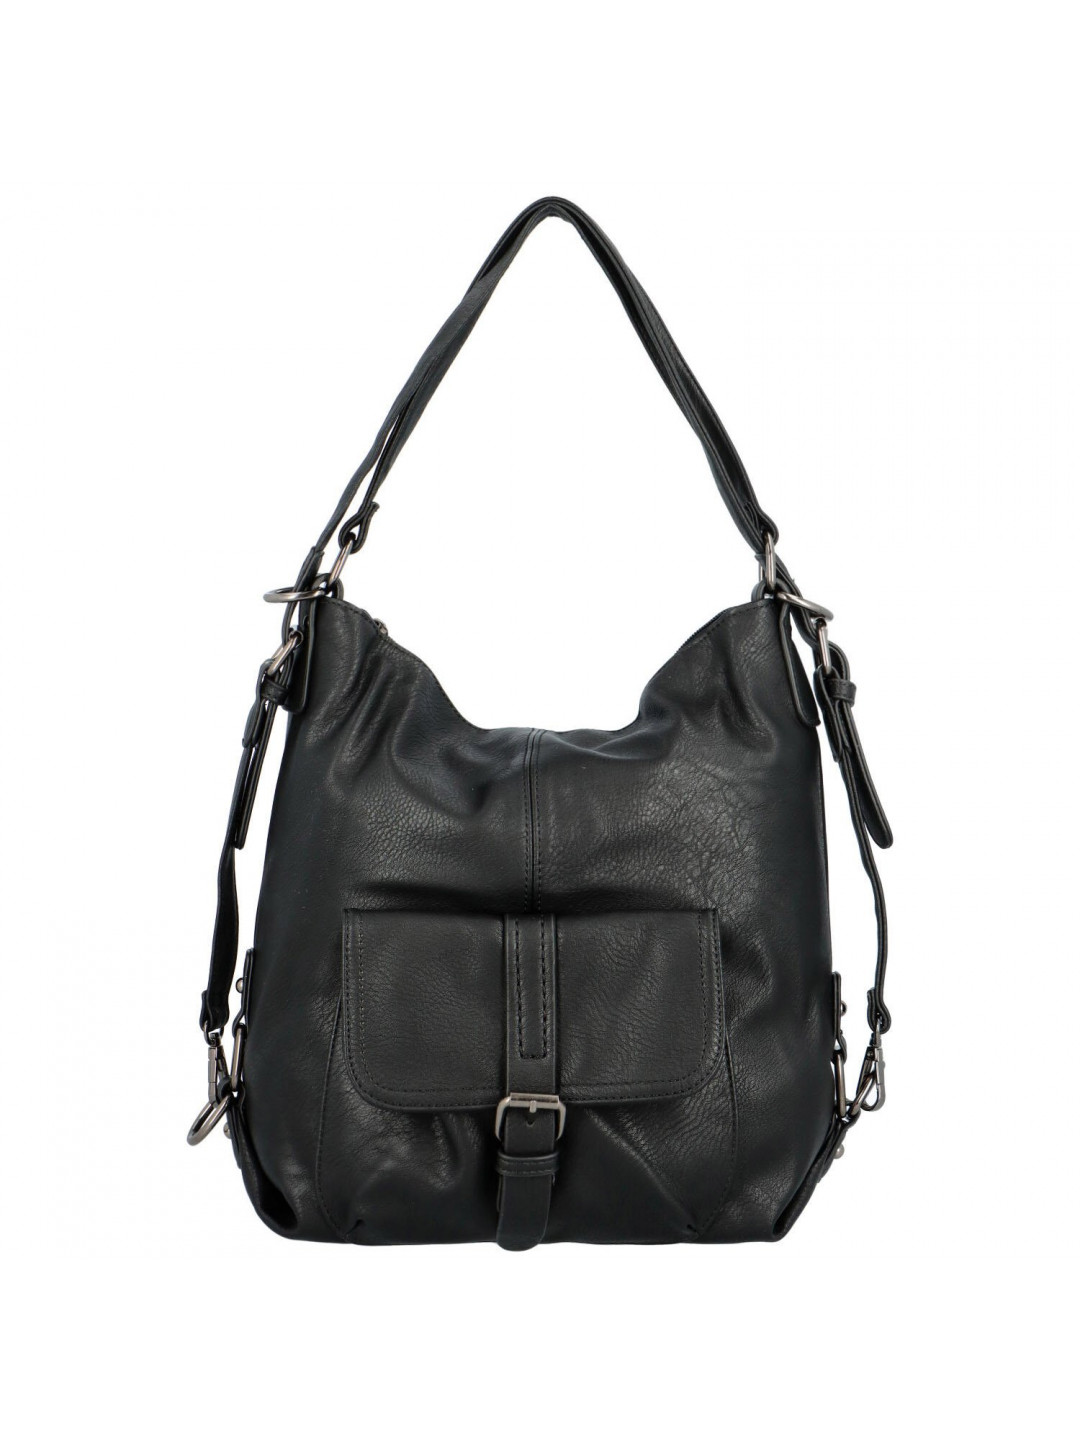 Praktický dámský kabelko-batůžek Astrid černá